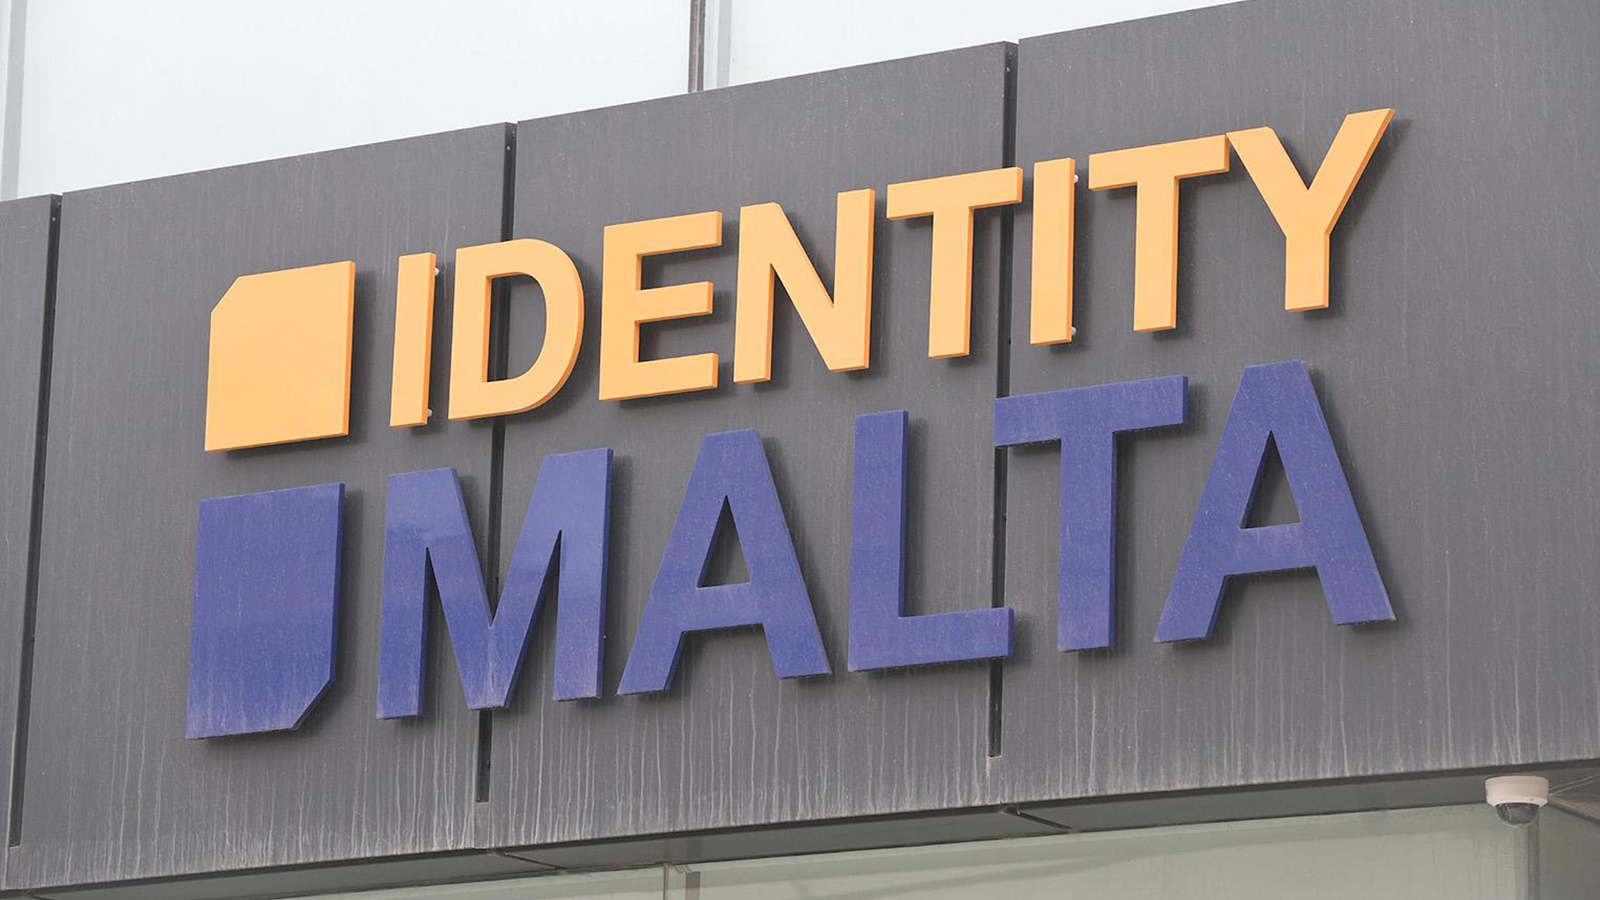 Identity Malta Rebrands as "Identità"